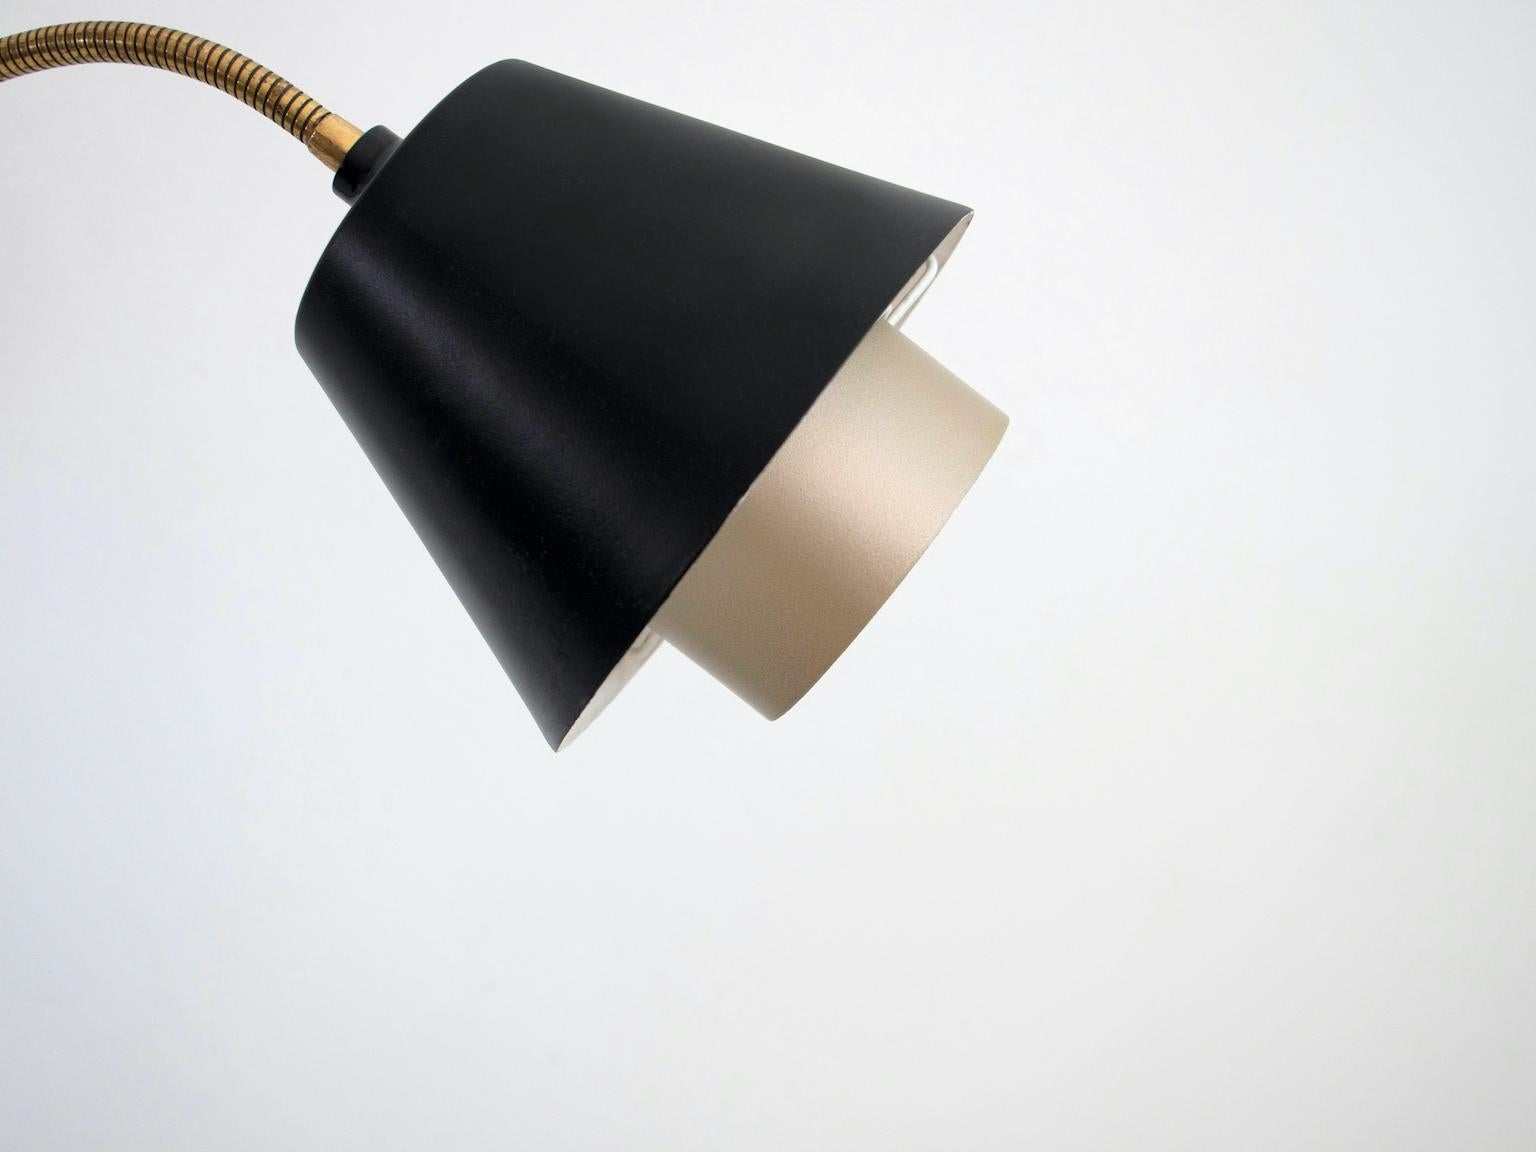 Metal Danish Floor Lamp with Two Adjustable Lights